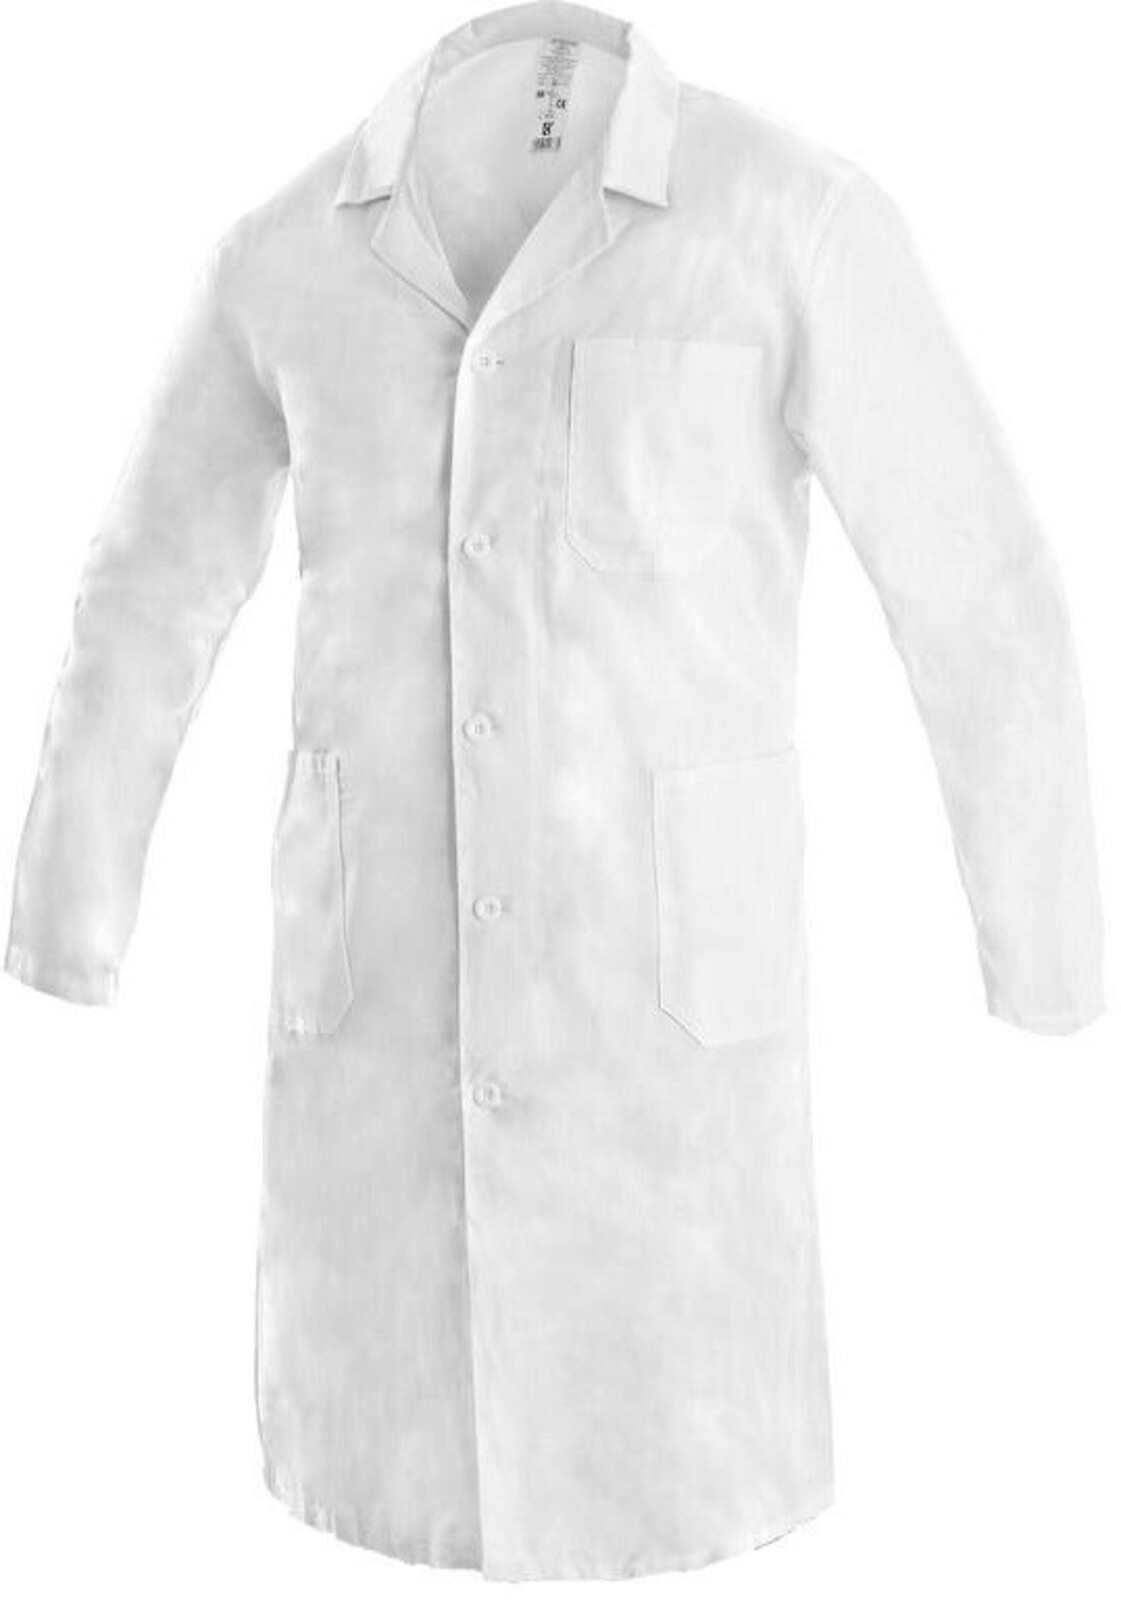 Pánsky plášť CXS Adam - veľkosť: 48, farba: biela